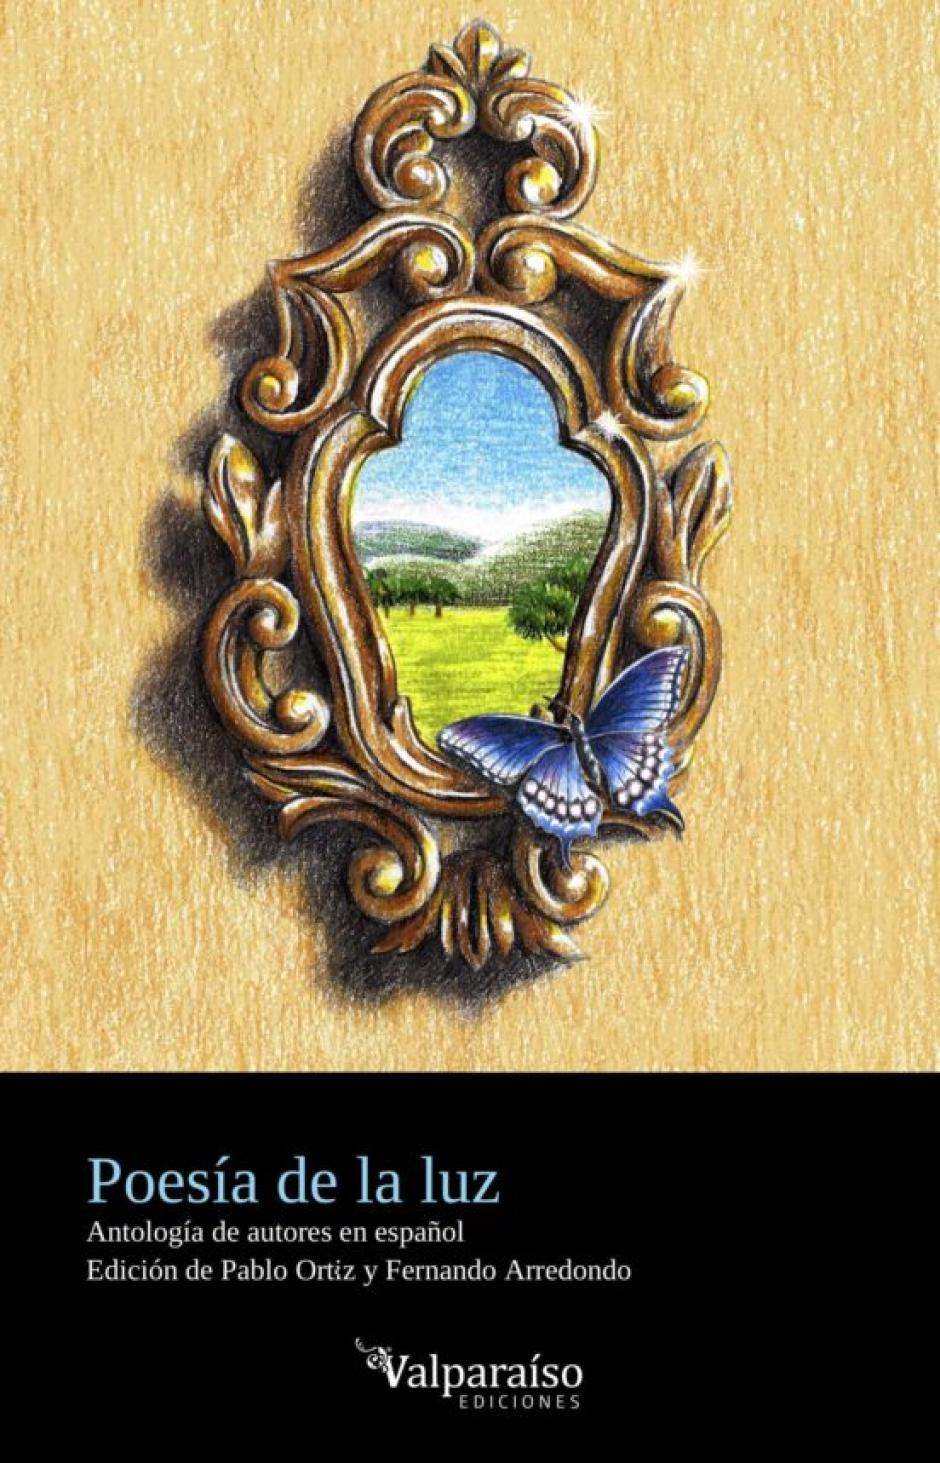 Poesía de la luz. Antología de autores en español. Ediciones Valparaíso. 136 páginas. 12,95 euros